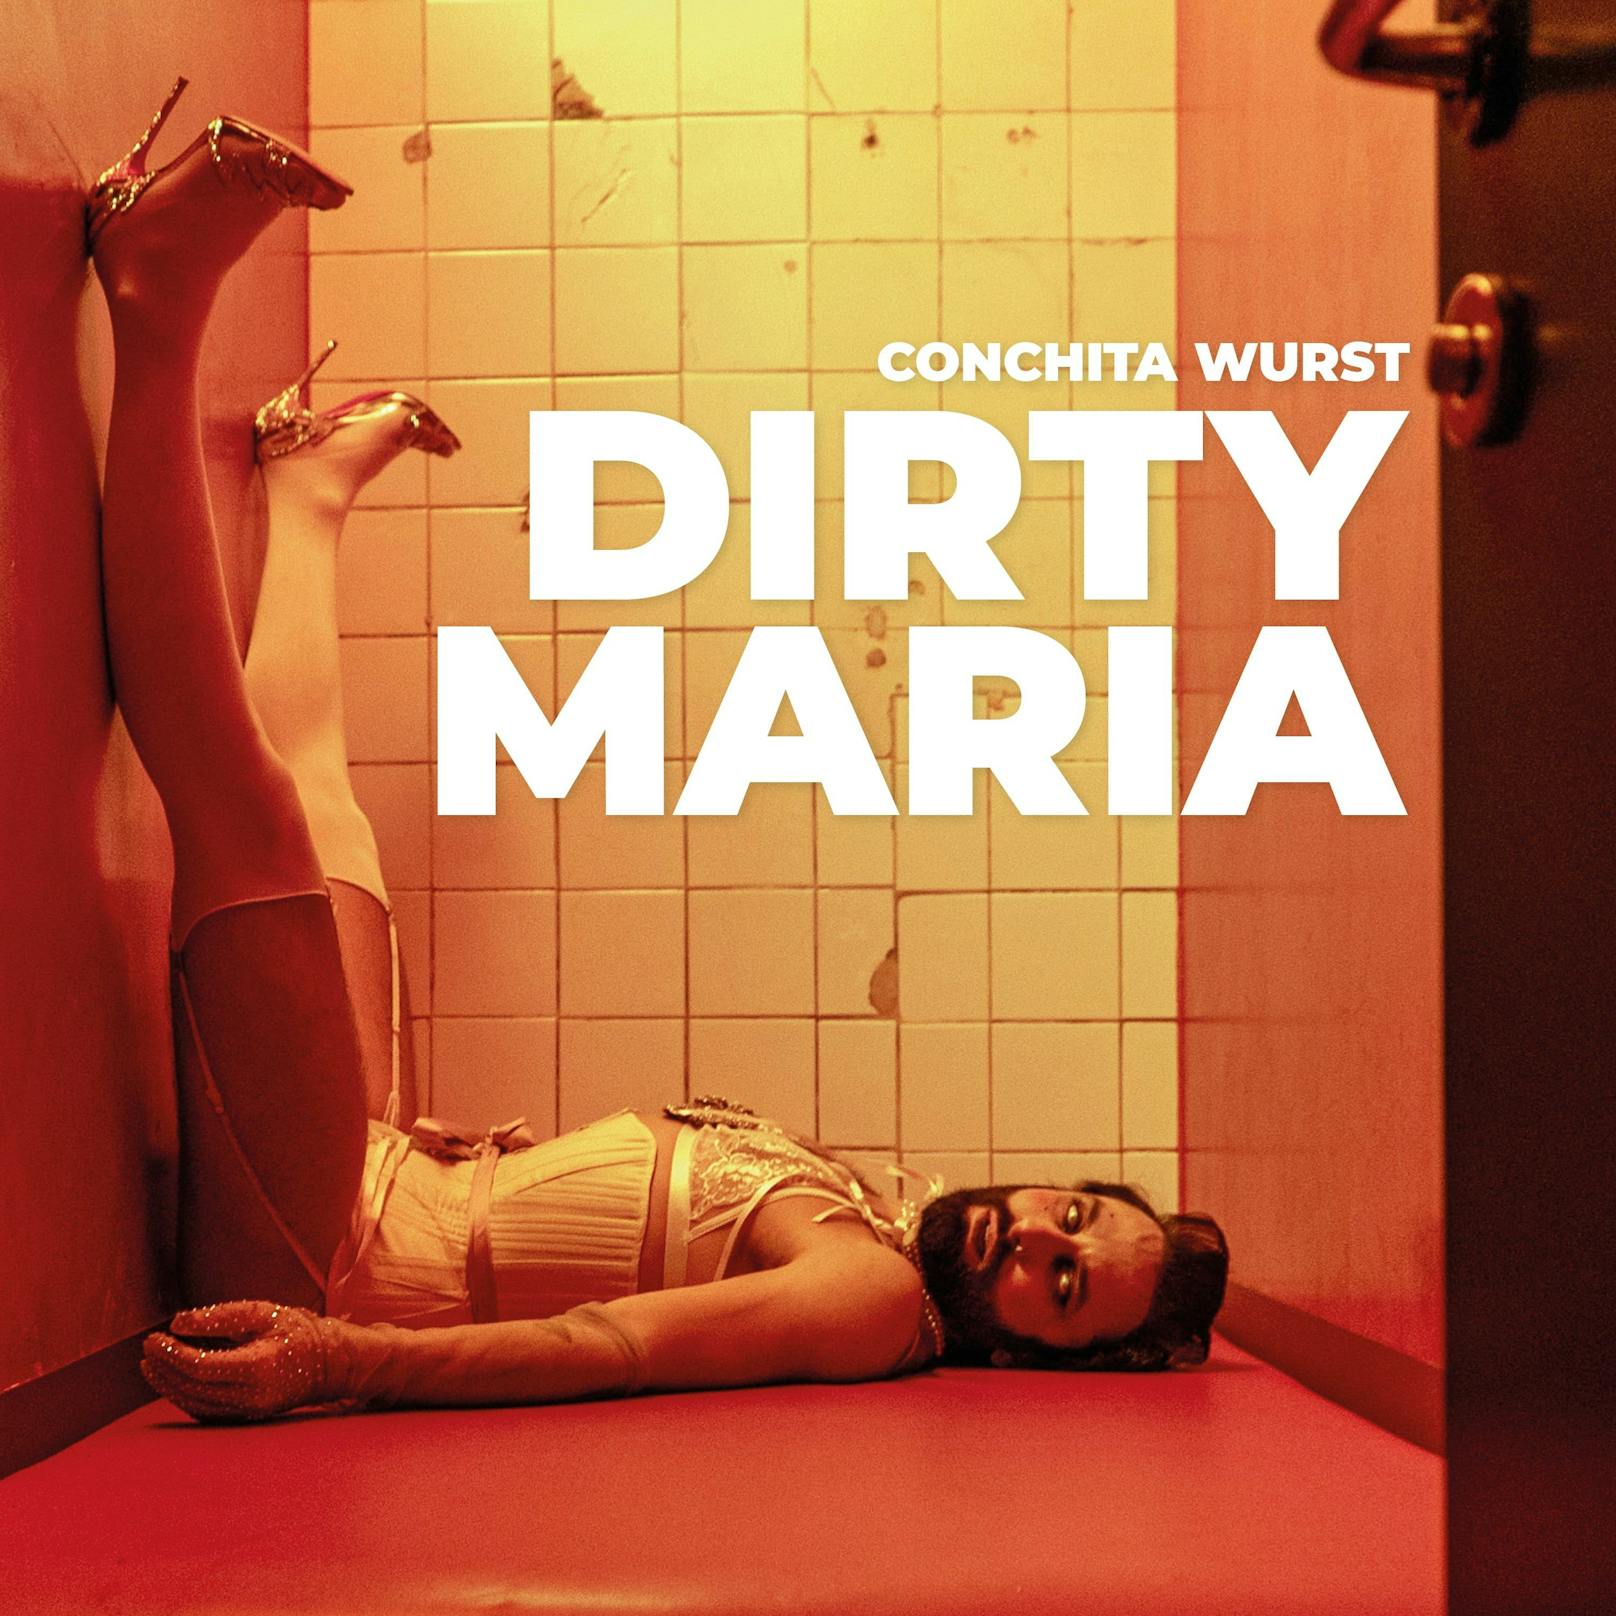 Das Cover von Conchita Wursts neuem Song "Dirty Maria".